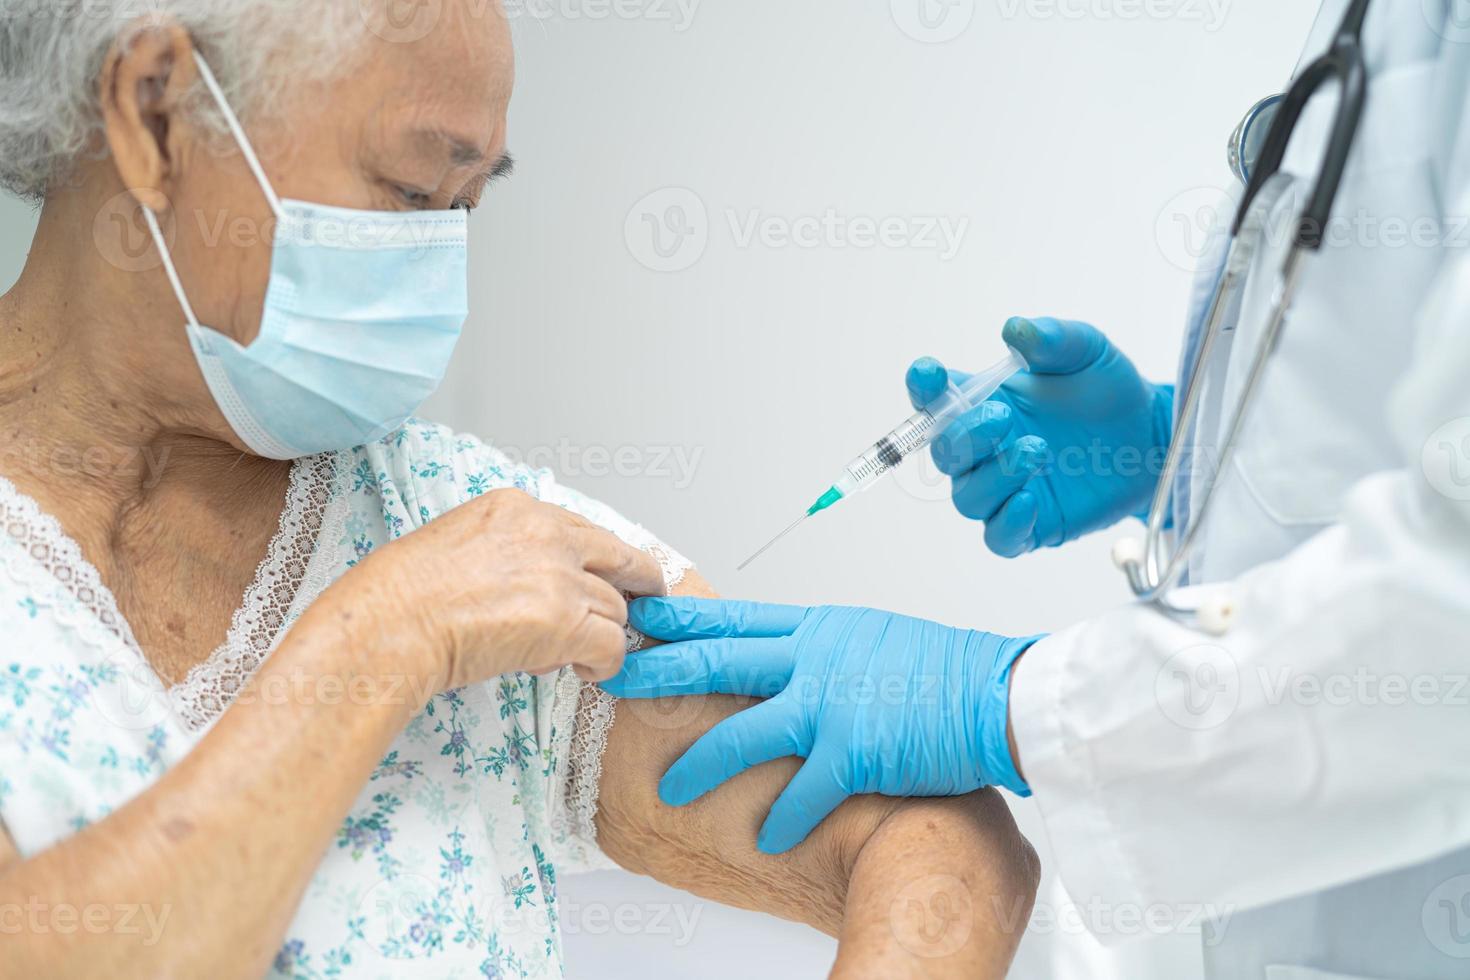 une femme âgée asiatique âgée portant un masque facial recevant un vaccin contre le covid-19 ou le coronavirus par un médecin fait une injection. photo